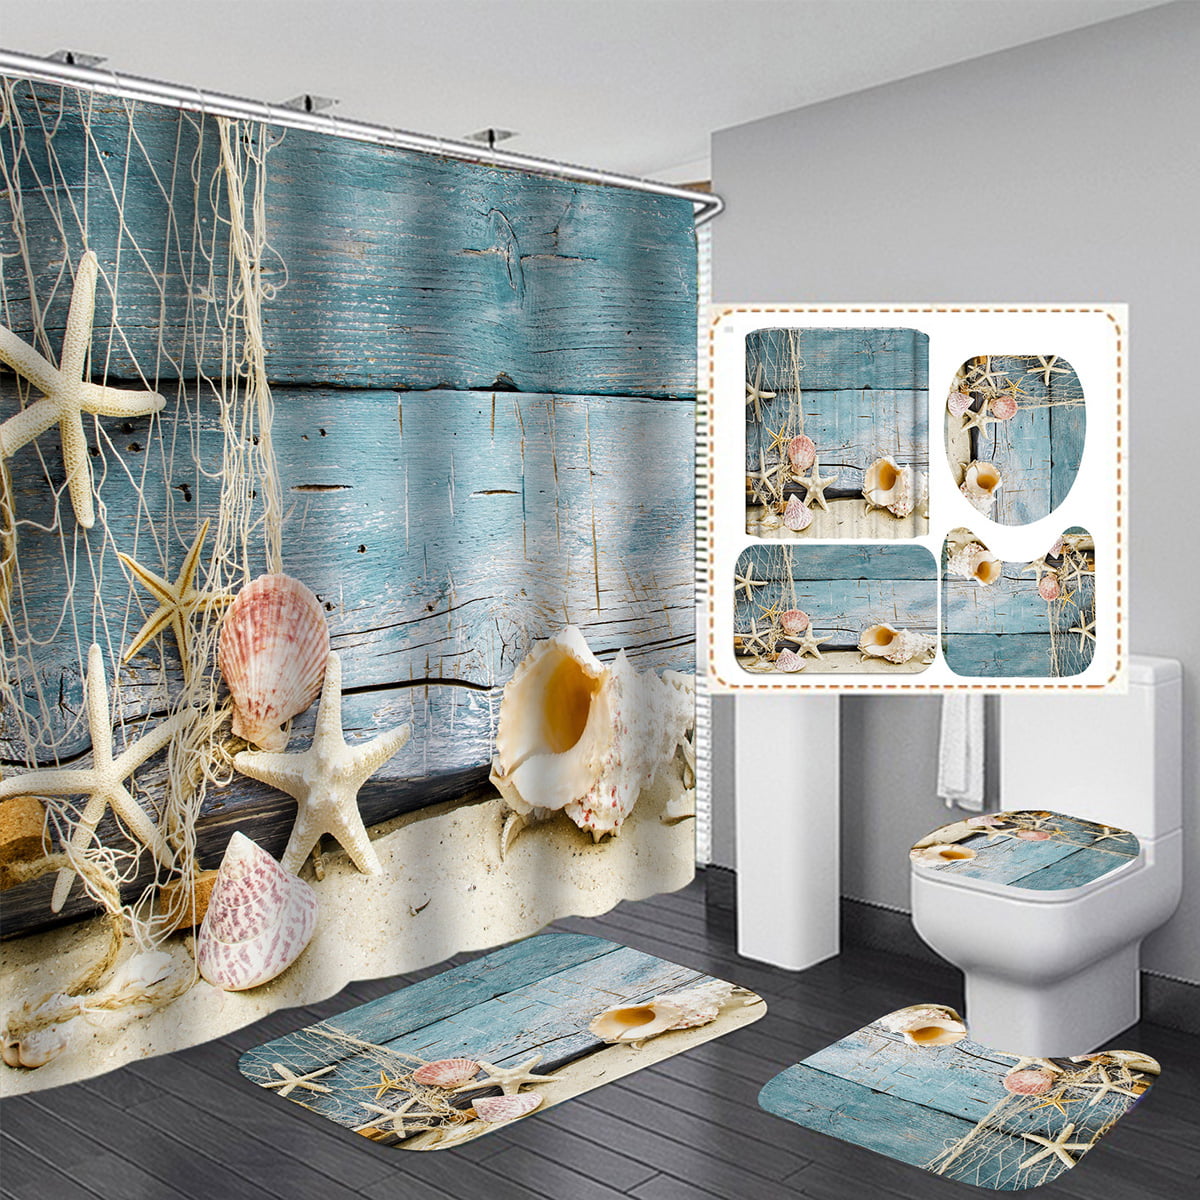 Details about   Watercolour Fish Shower Curtain Bath Mat Toilet Lid Base Carpet Bathroom Decor l Sockel Teppich Bad Dekor data-mtsrclang=en-US href=# onclick=return false; 							show original title 